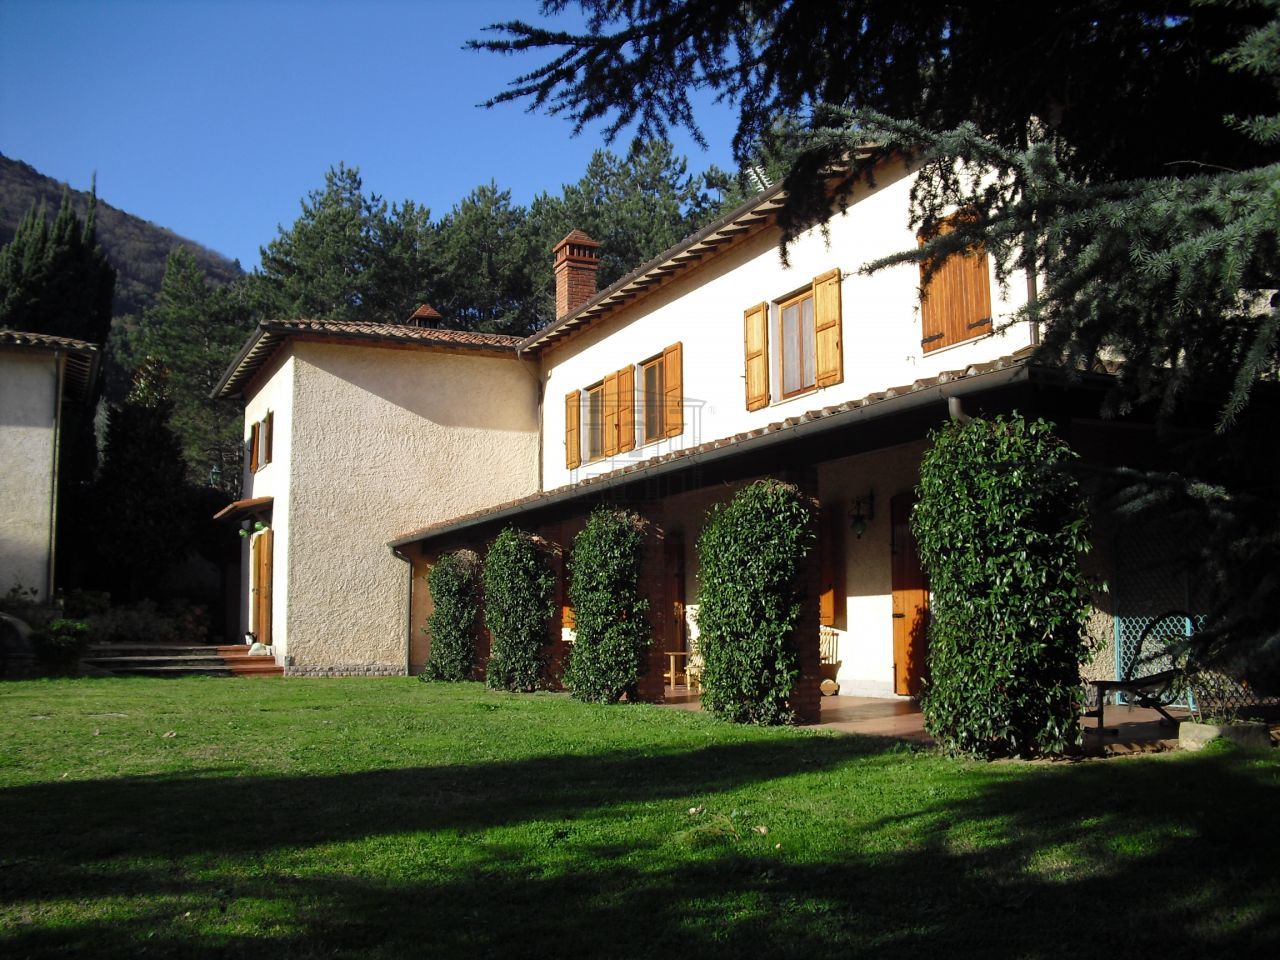 Casa indipendente con giardino, Lucca sud